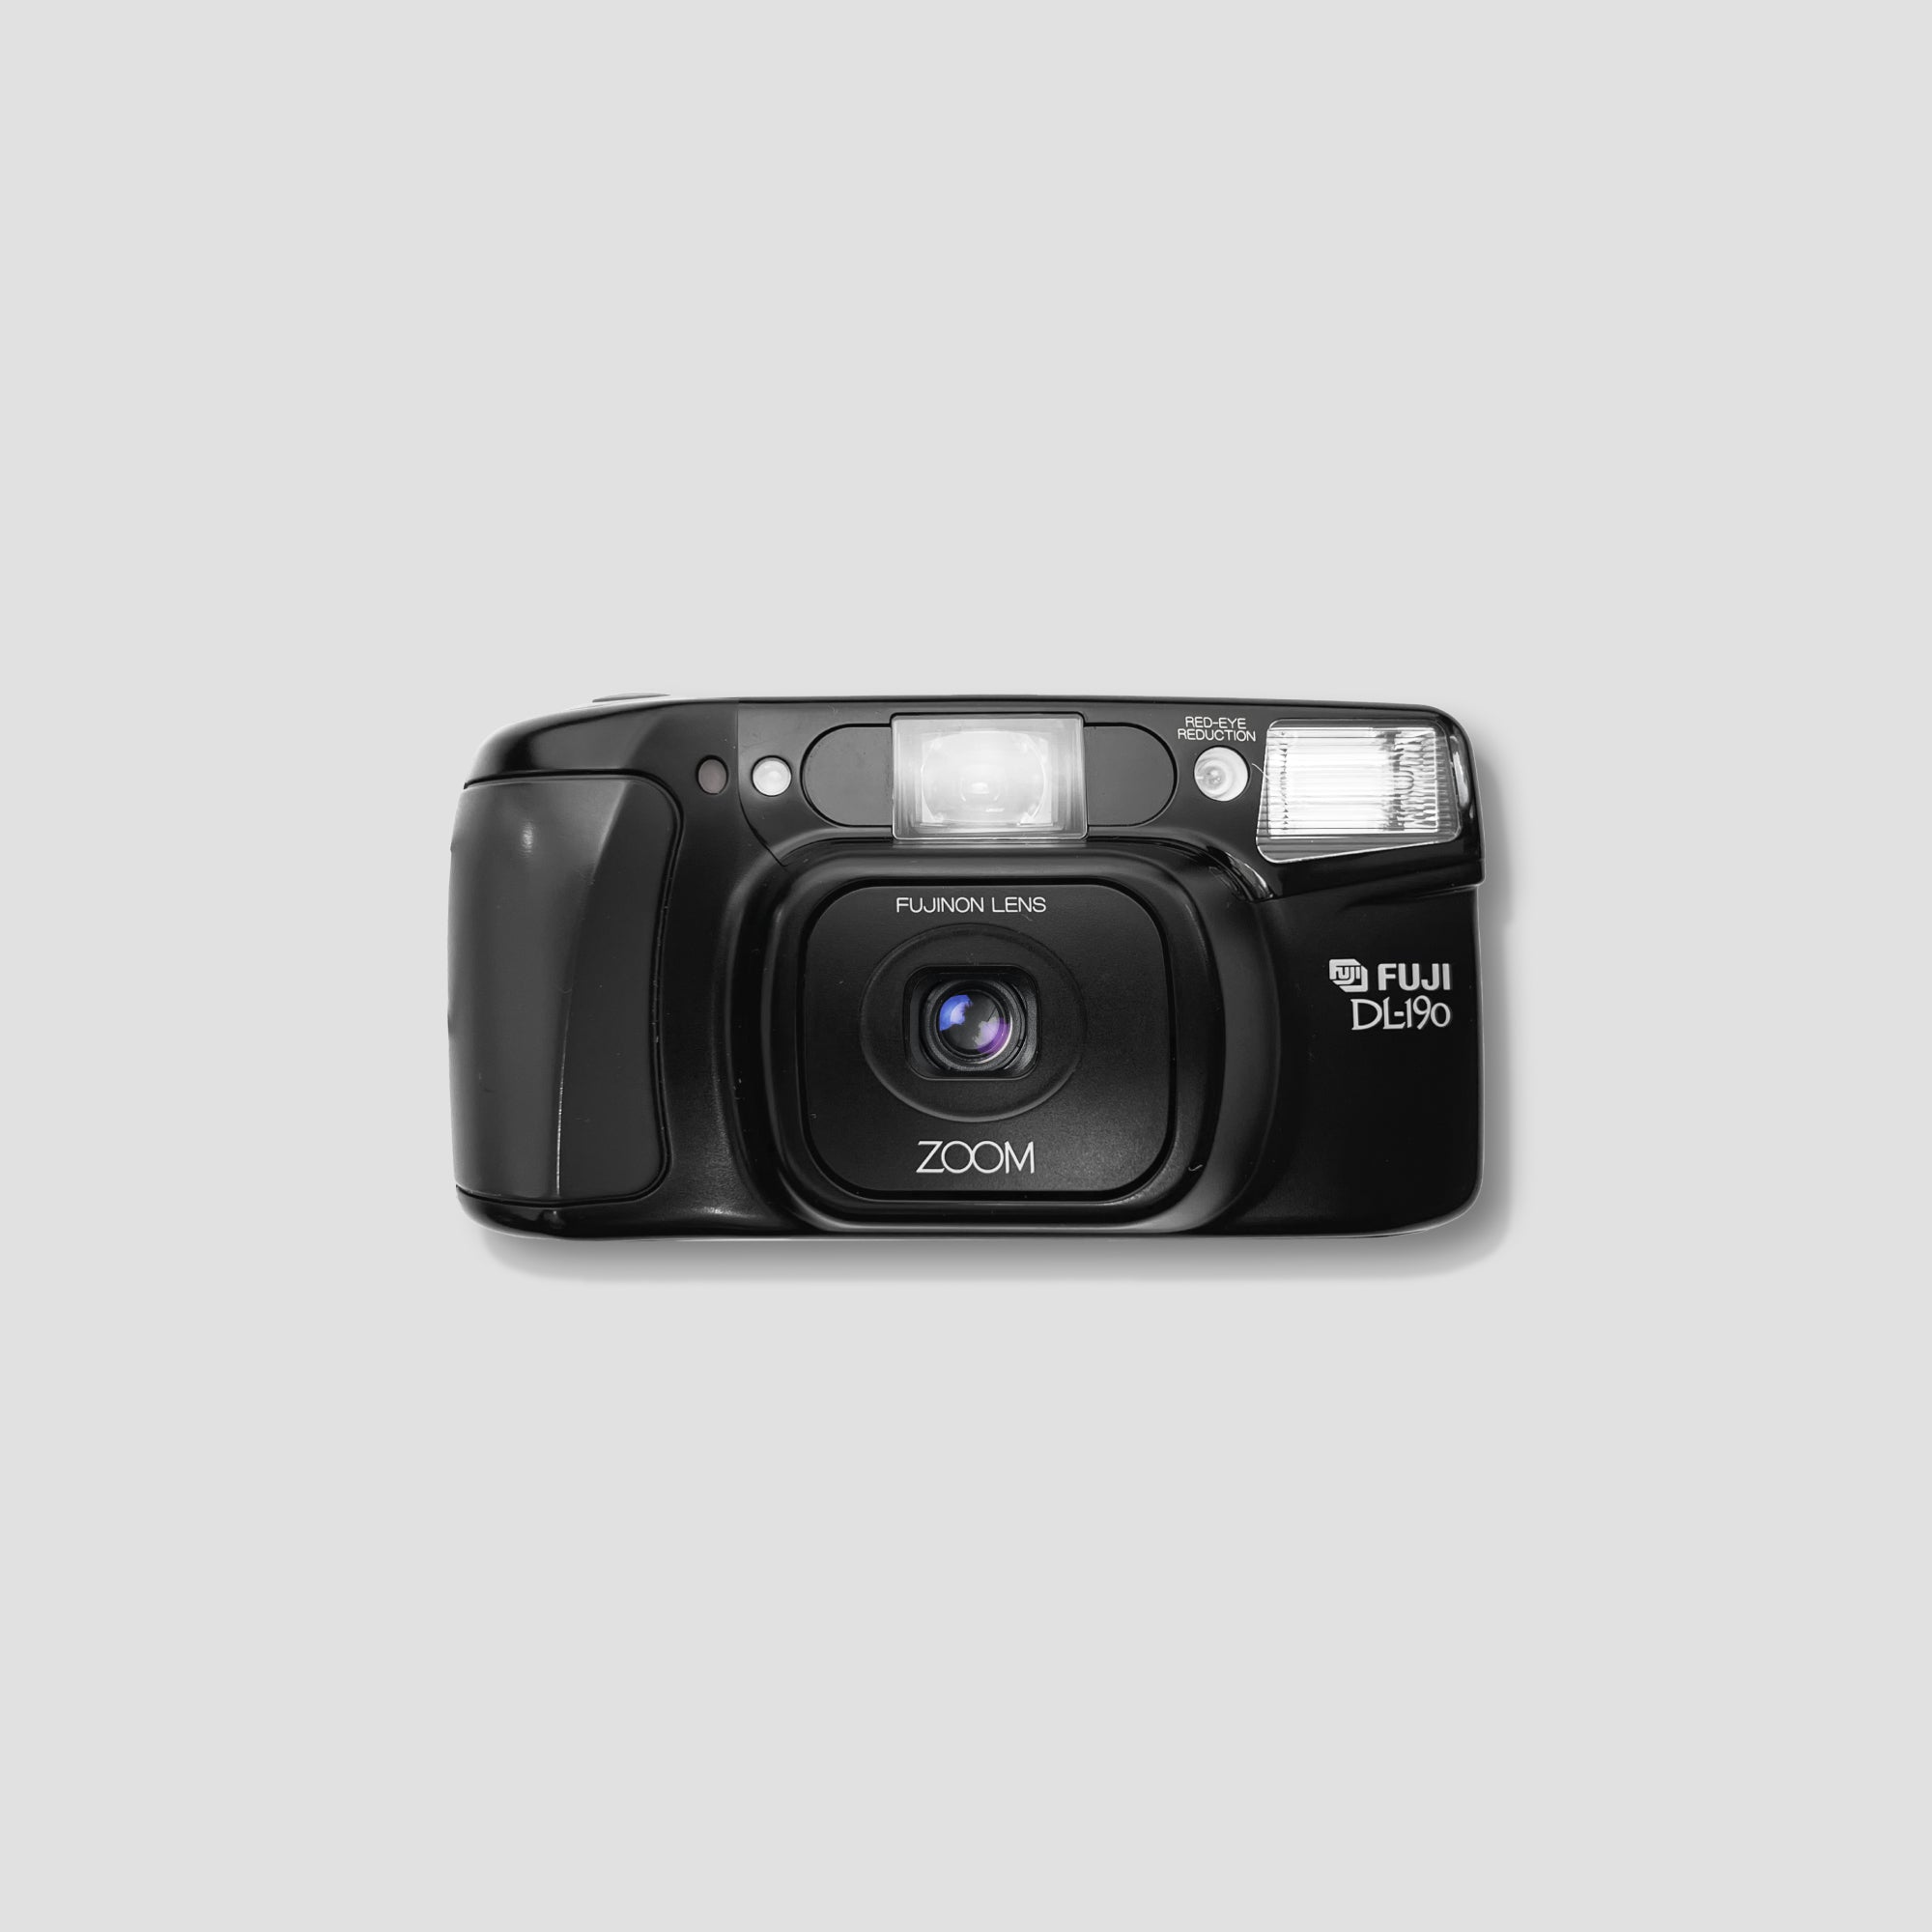 Fujifilm DL-190